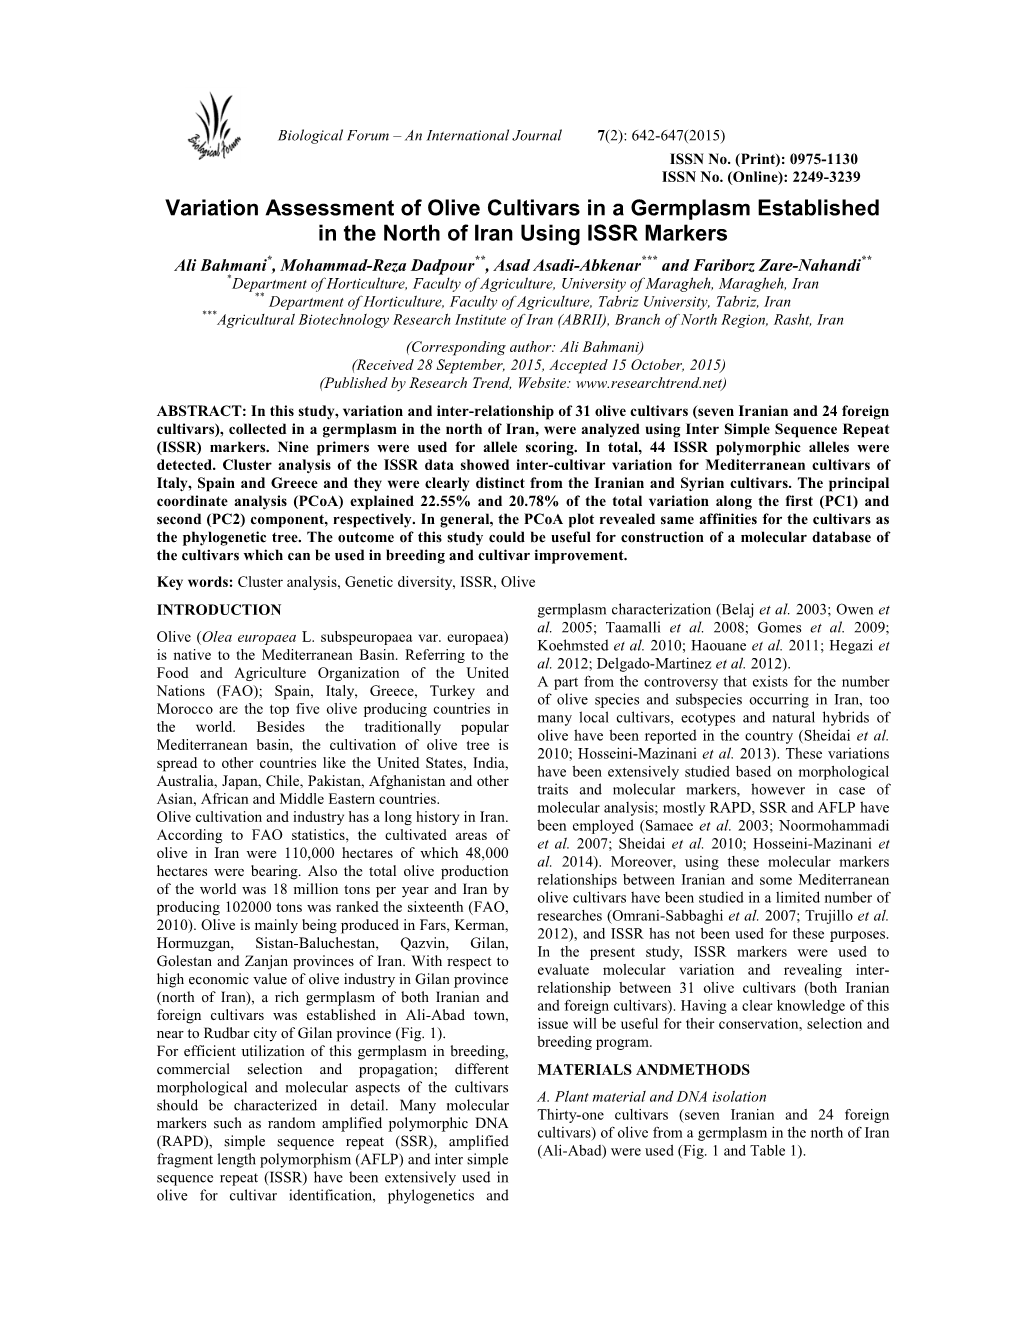 Variation Assessment of Olive Cultivars in a Germplasm